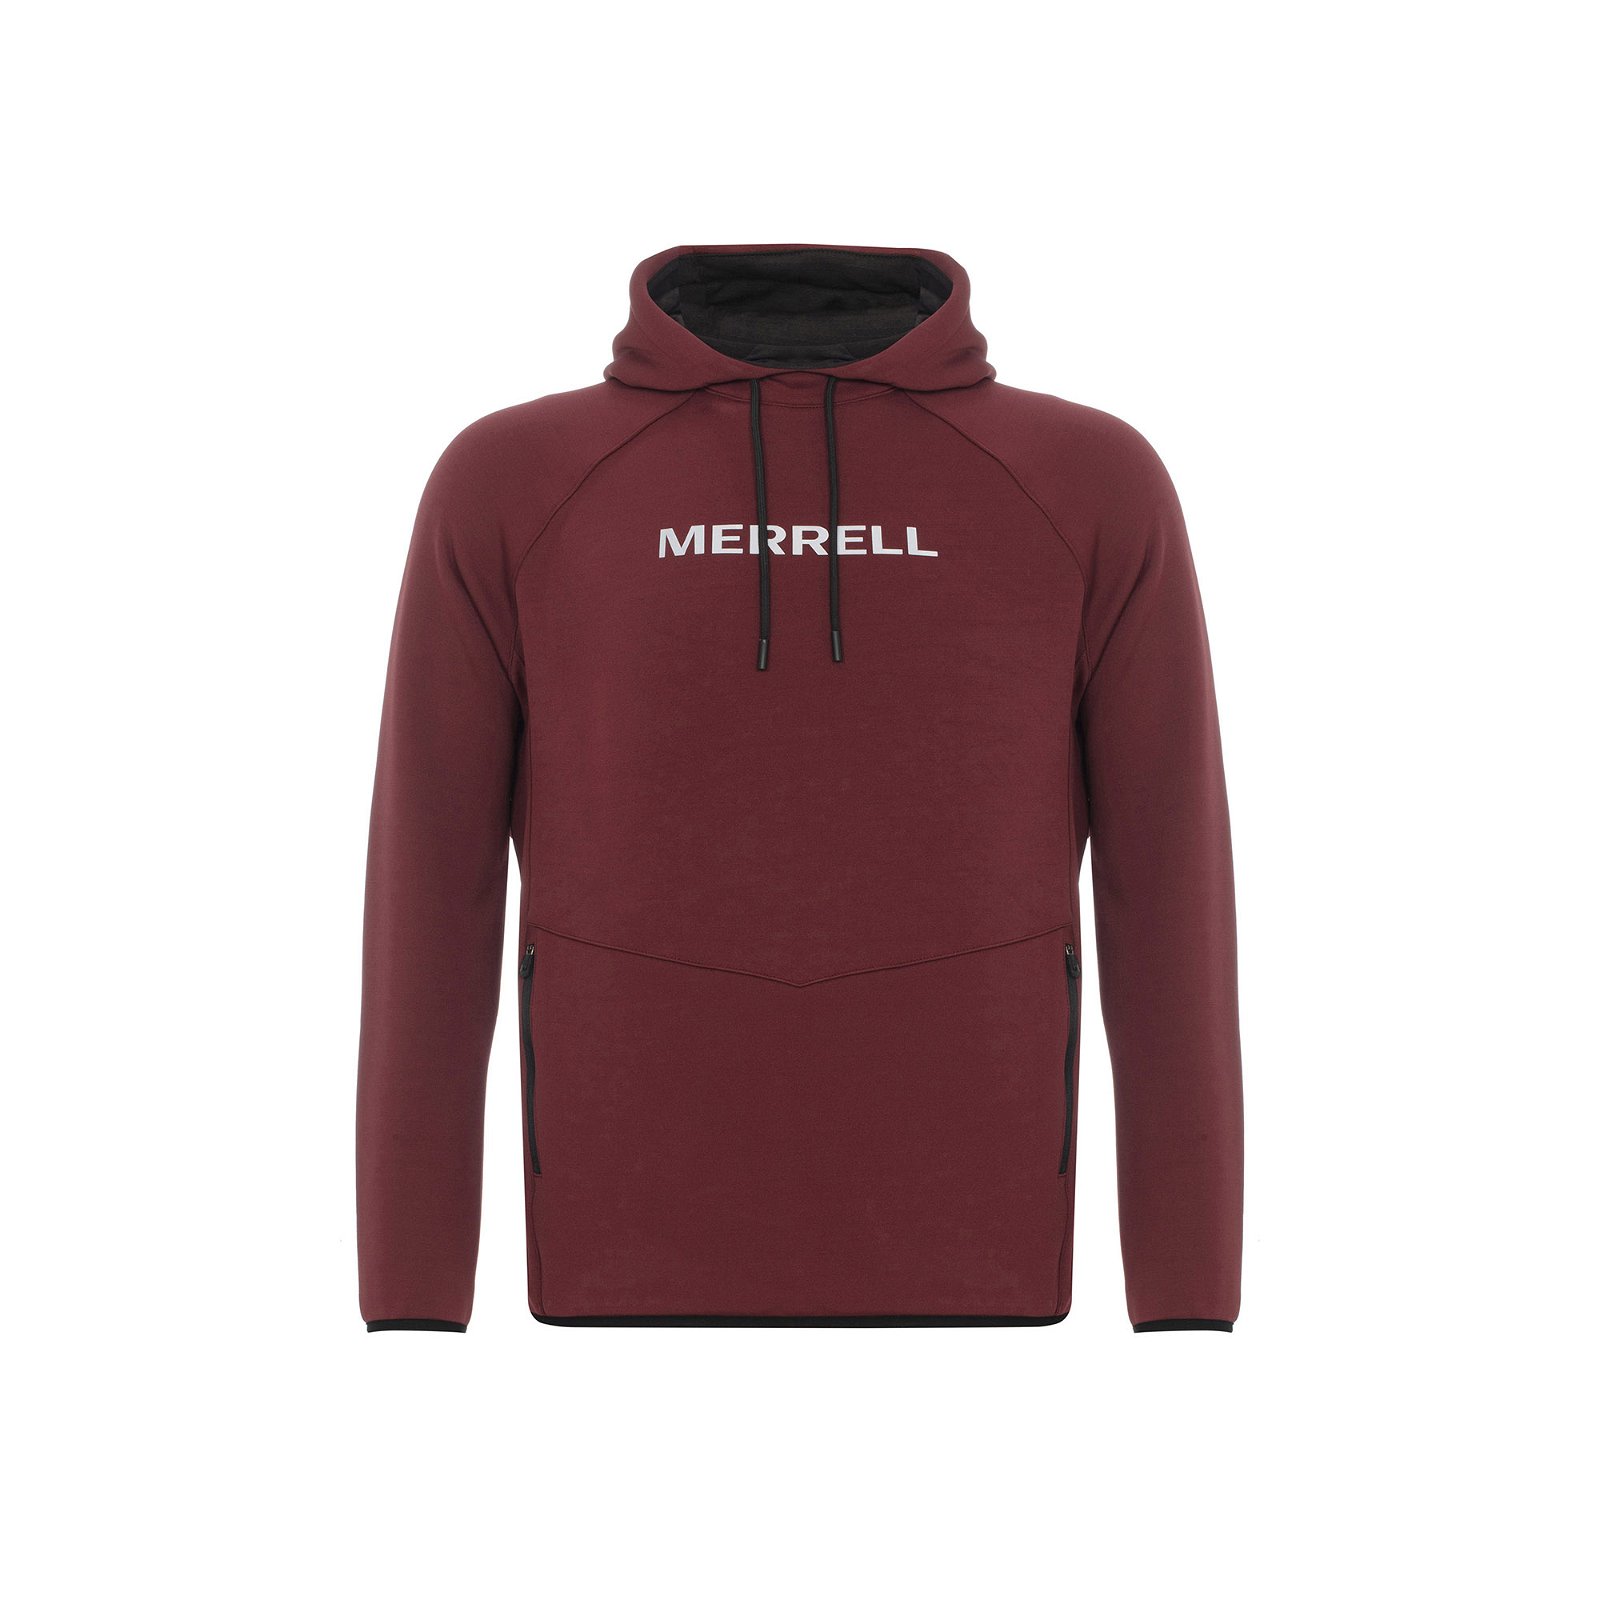 Merrell Search Erkek Sweatshirt - Bordo - 1